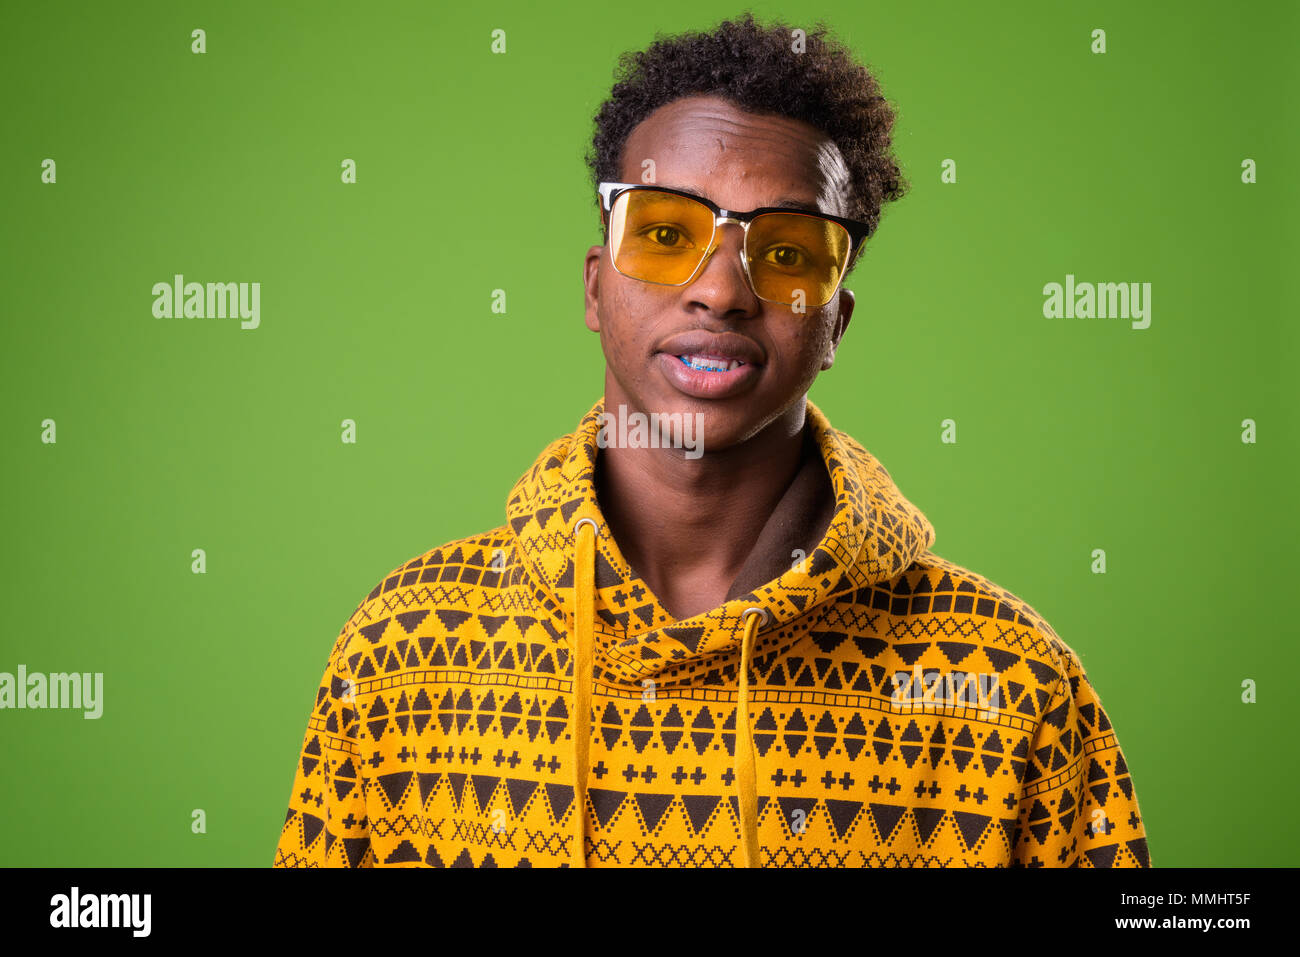 Jeune homme africain contre un arrière-plan vert Banque D'Images